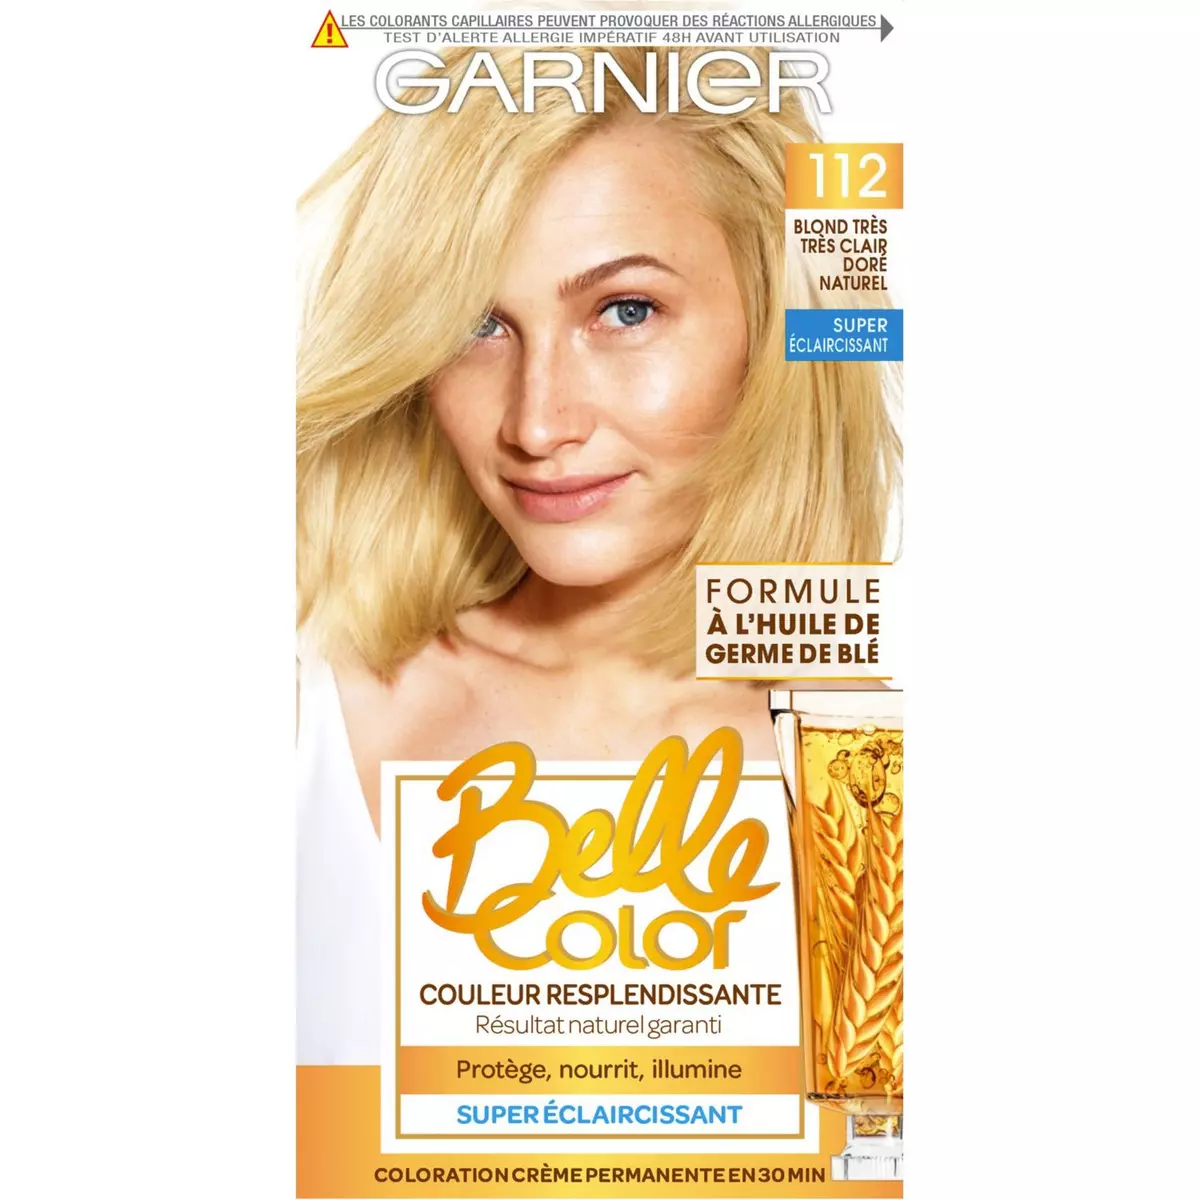 GARNIER Belle color coloration permanente 112 blond très clair doré naturel 3 produits 1 kit